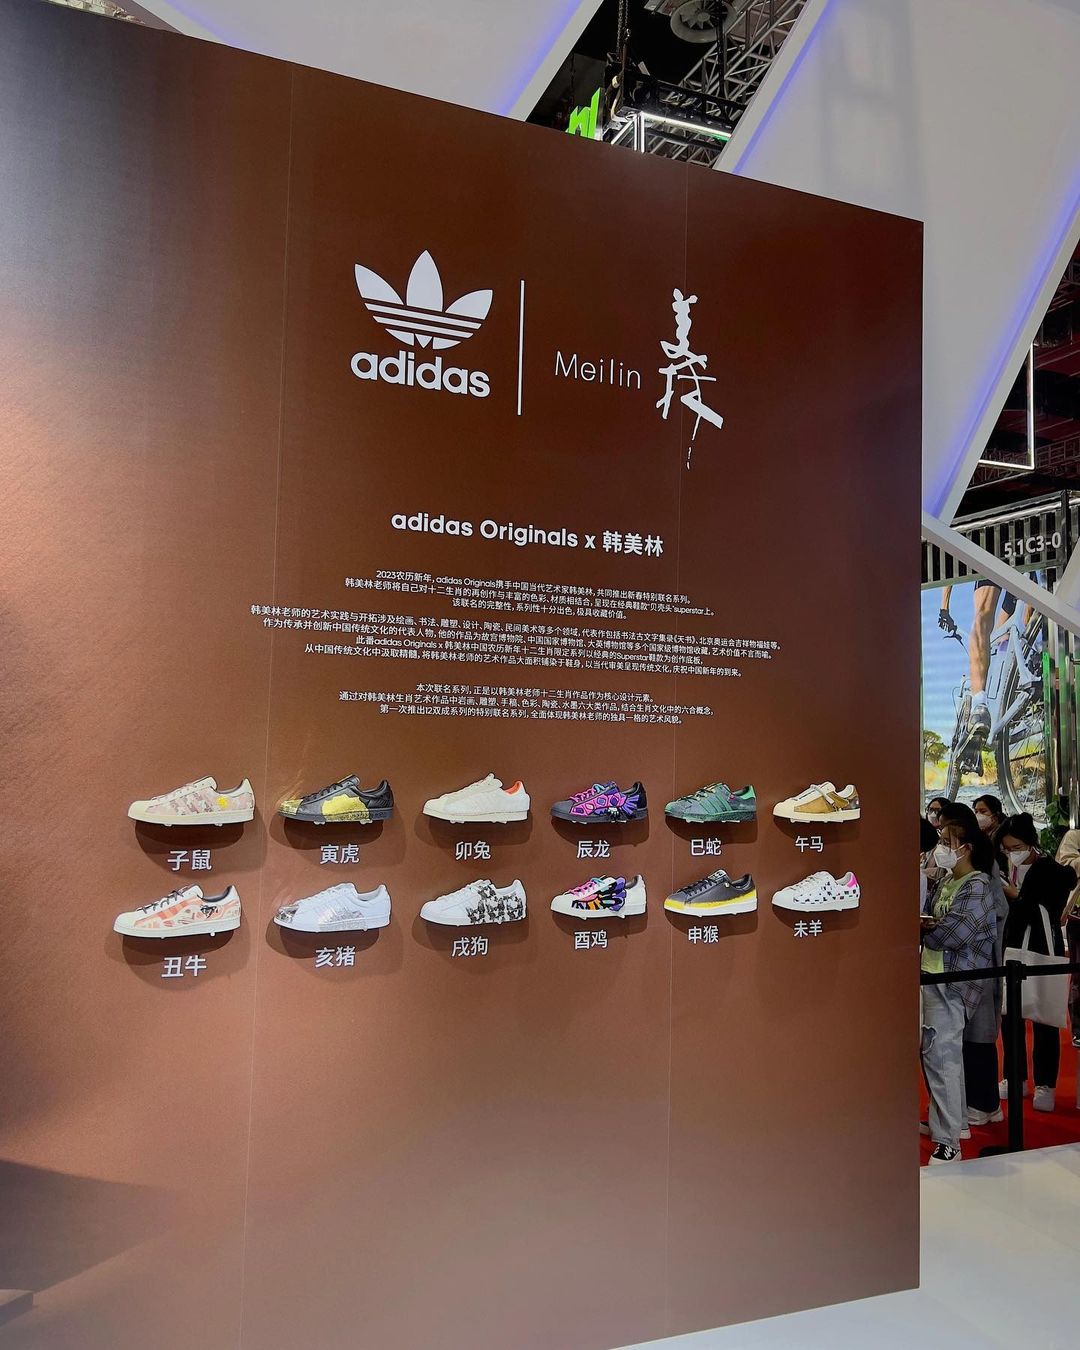 【リーク】Hanmeilin × adidas Originals SUPERSTAR “twelve chinese zodiac signs” (ハン・メイリン アディダス オリジナルス スーパースター “十二支” 韓 美林)